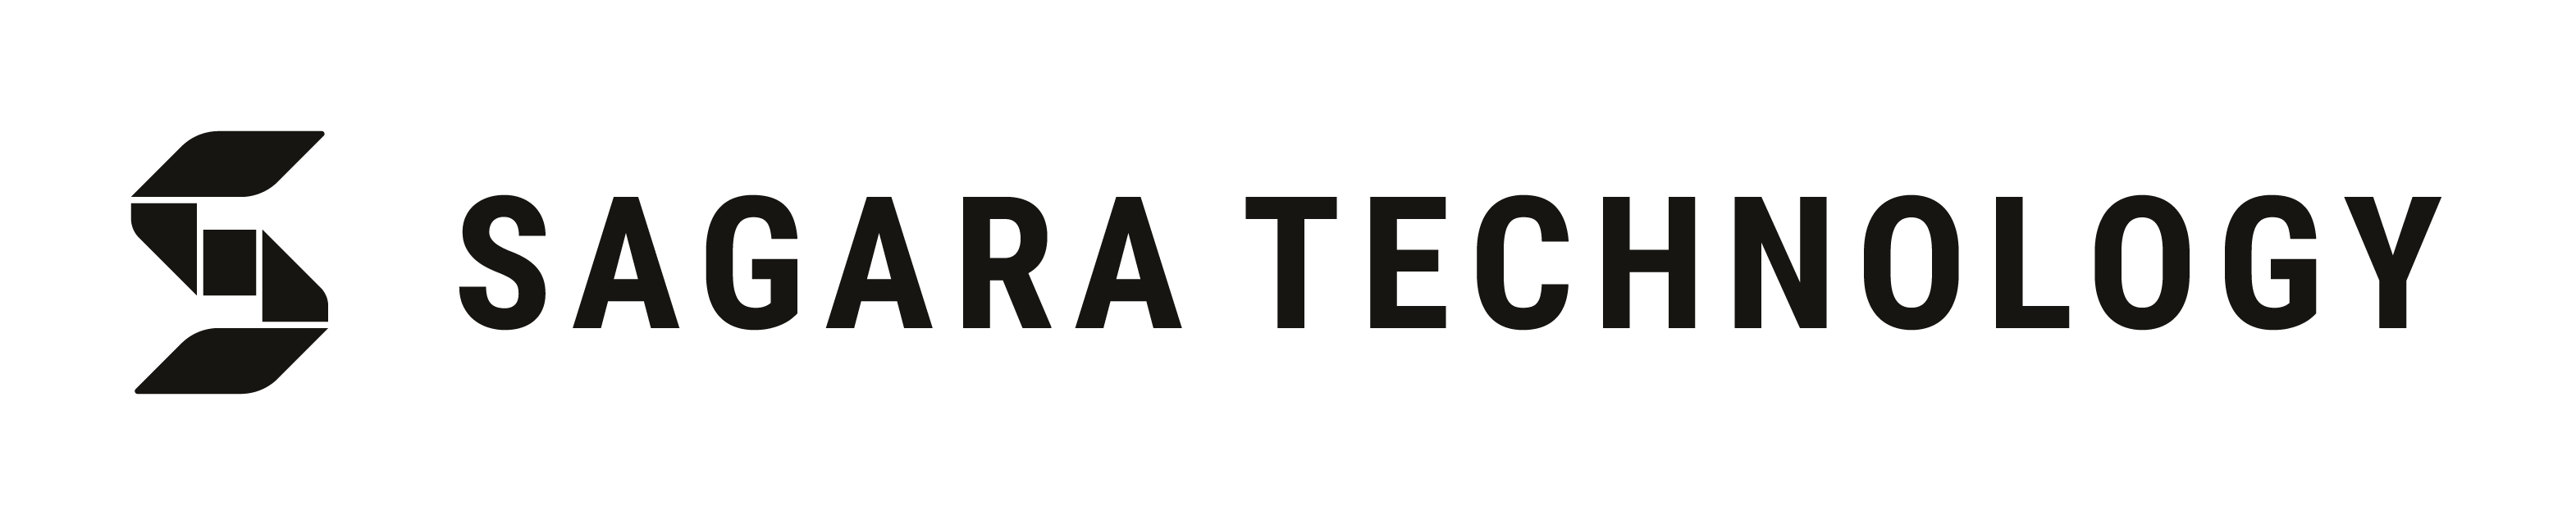 Sagara Technology